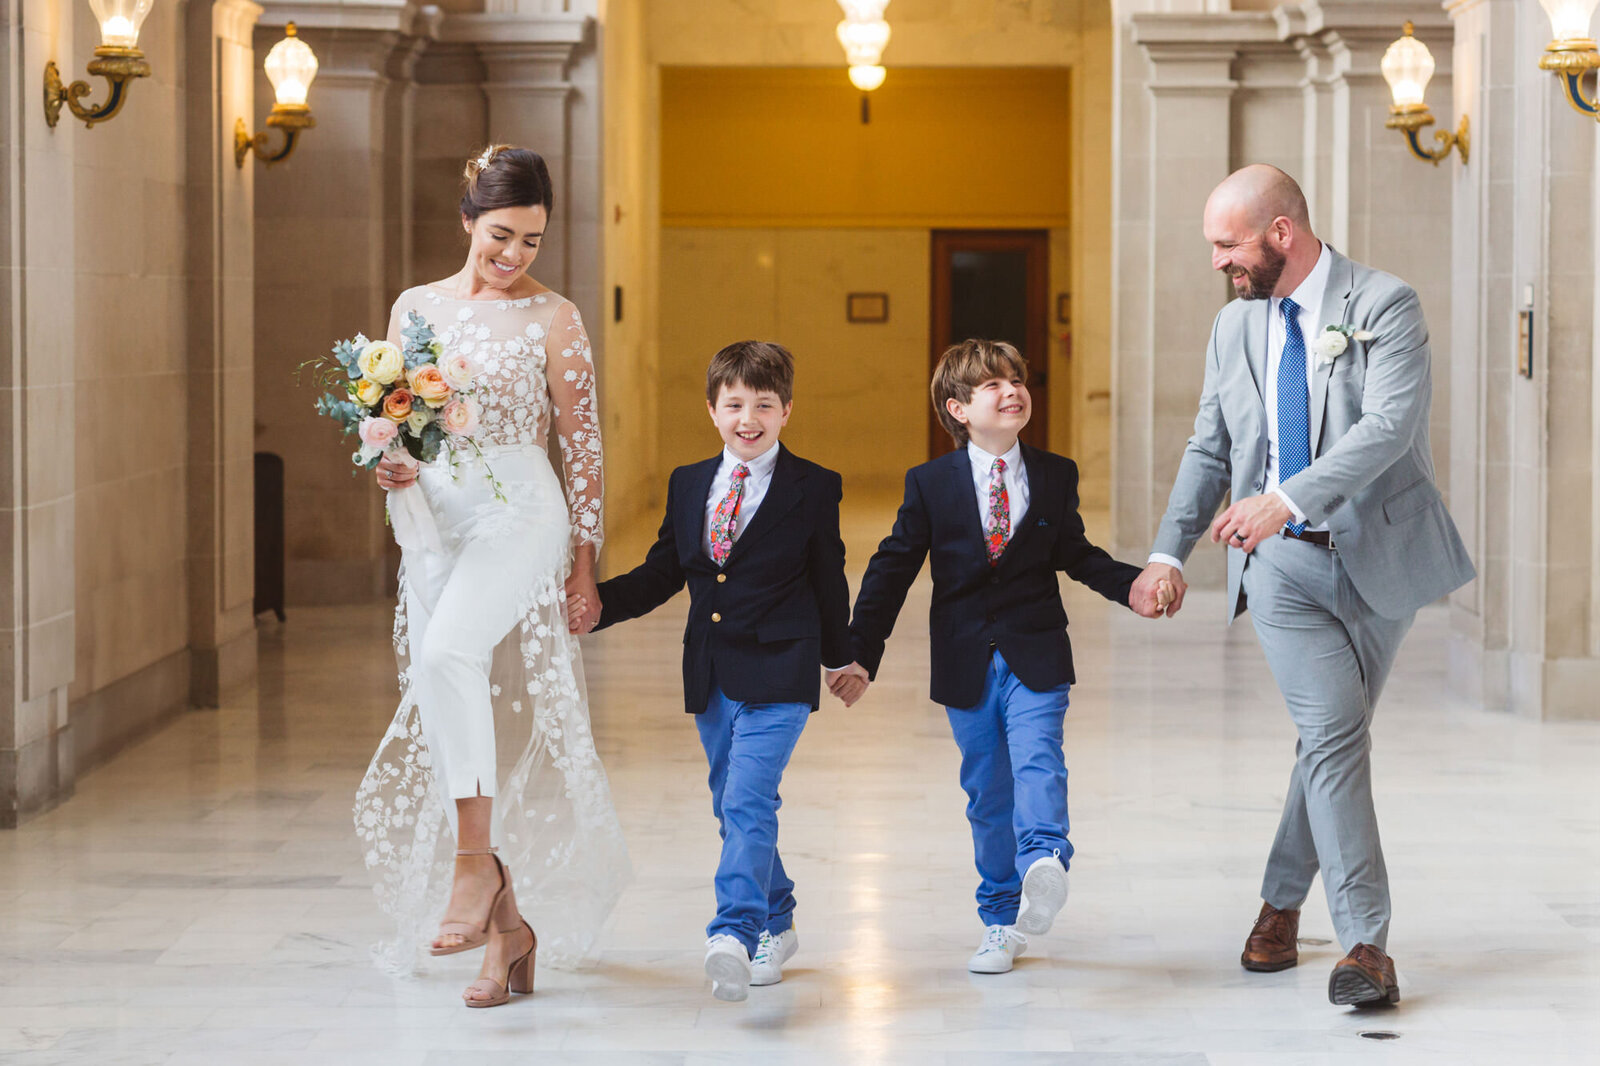 family photos at wedding at San Francisco City Hall